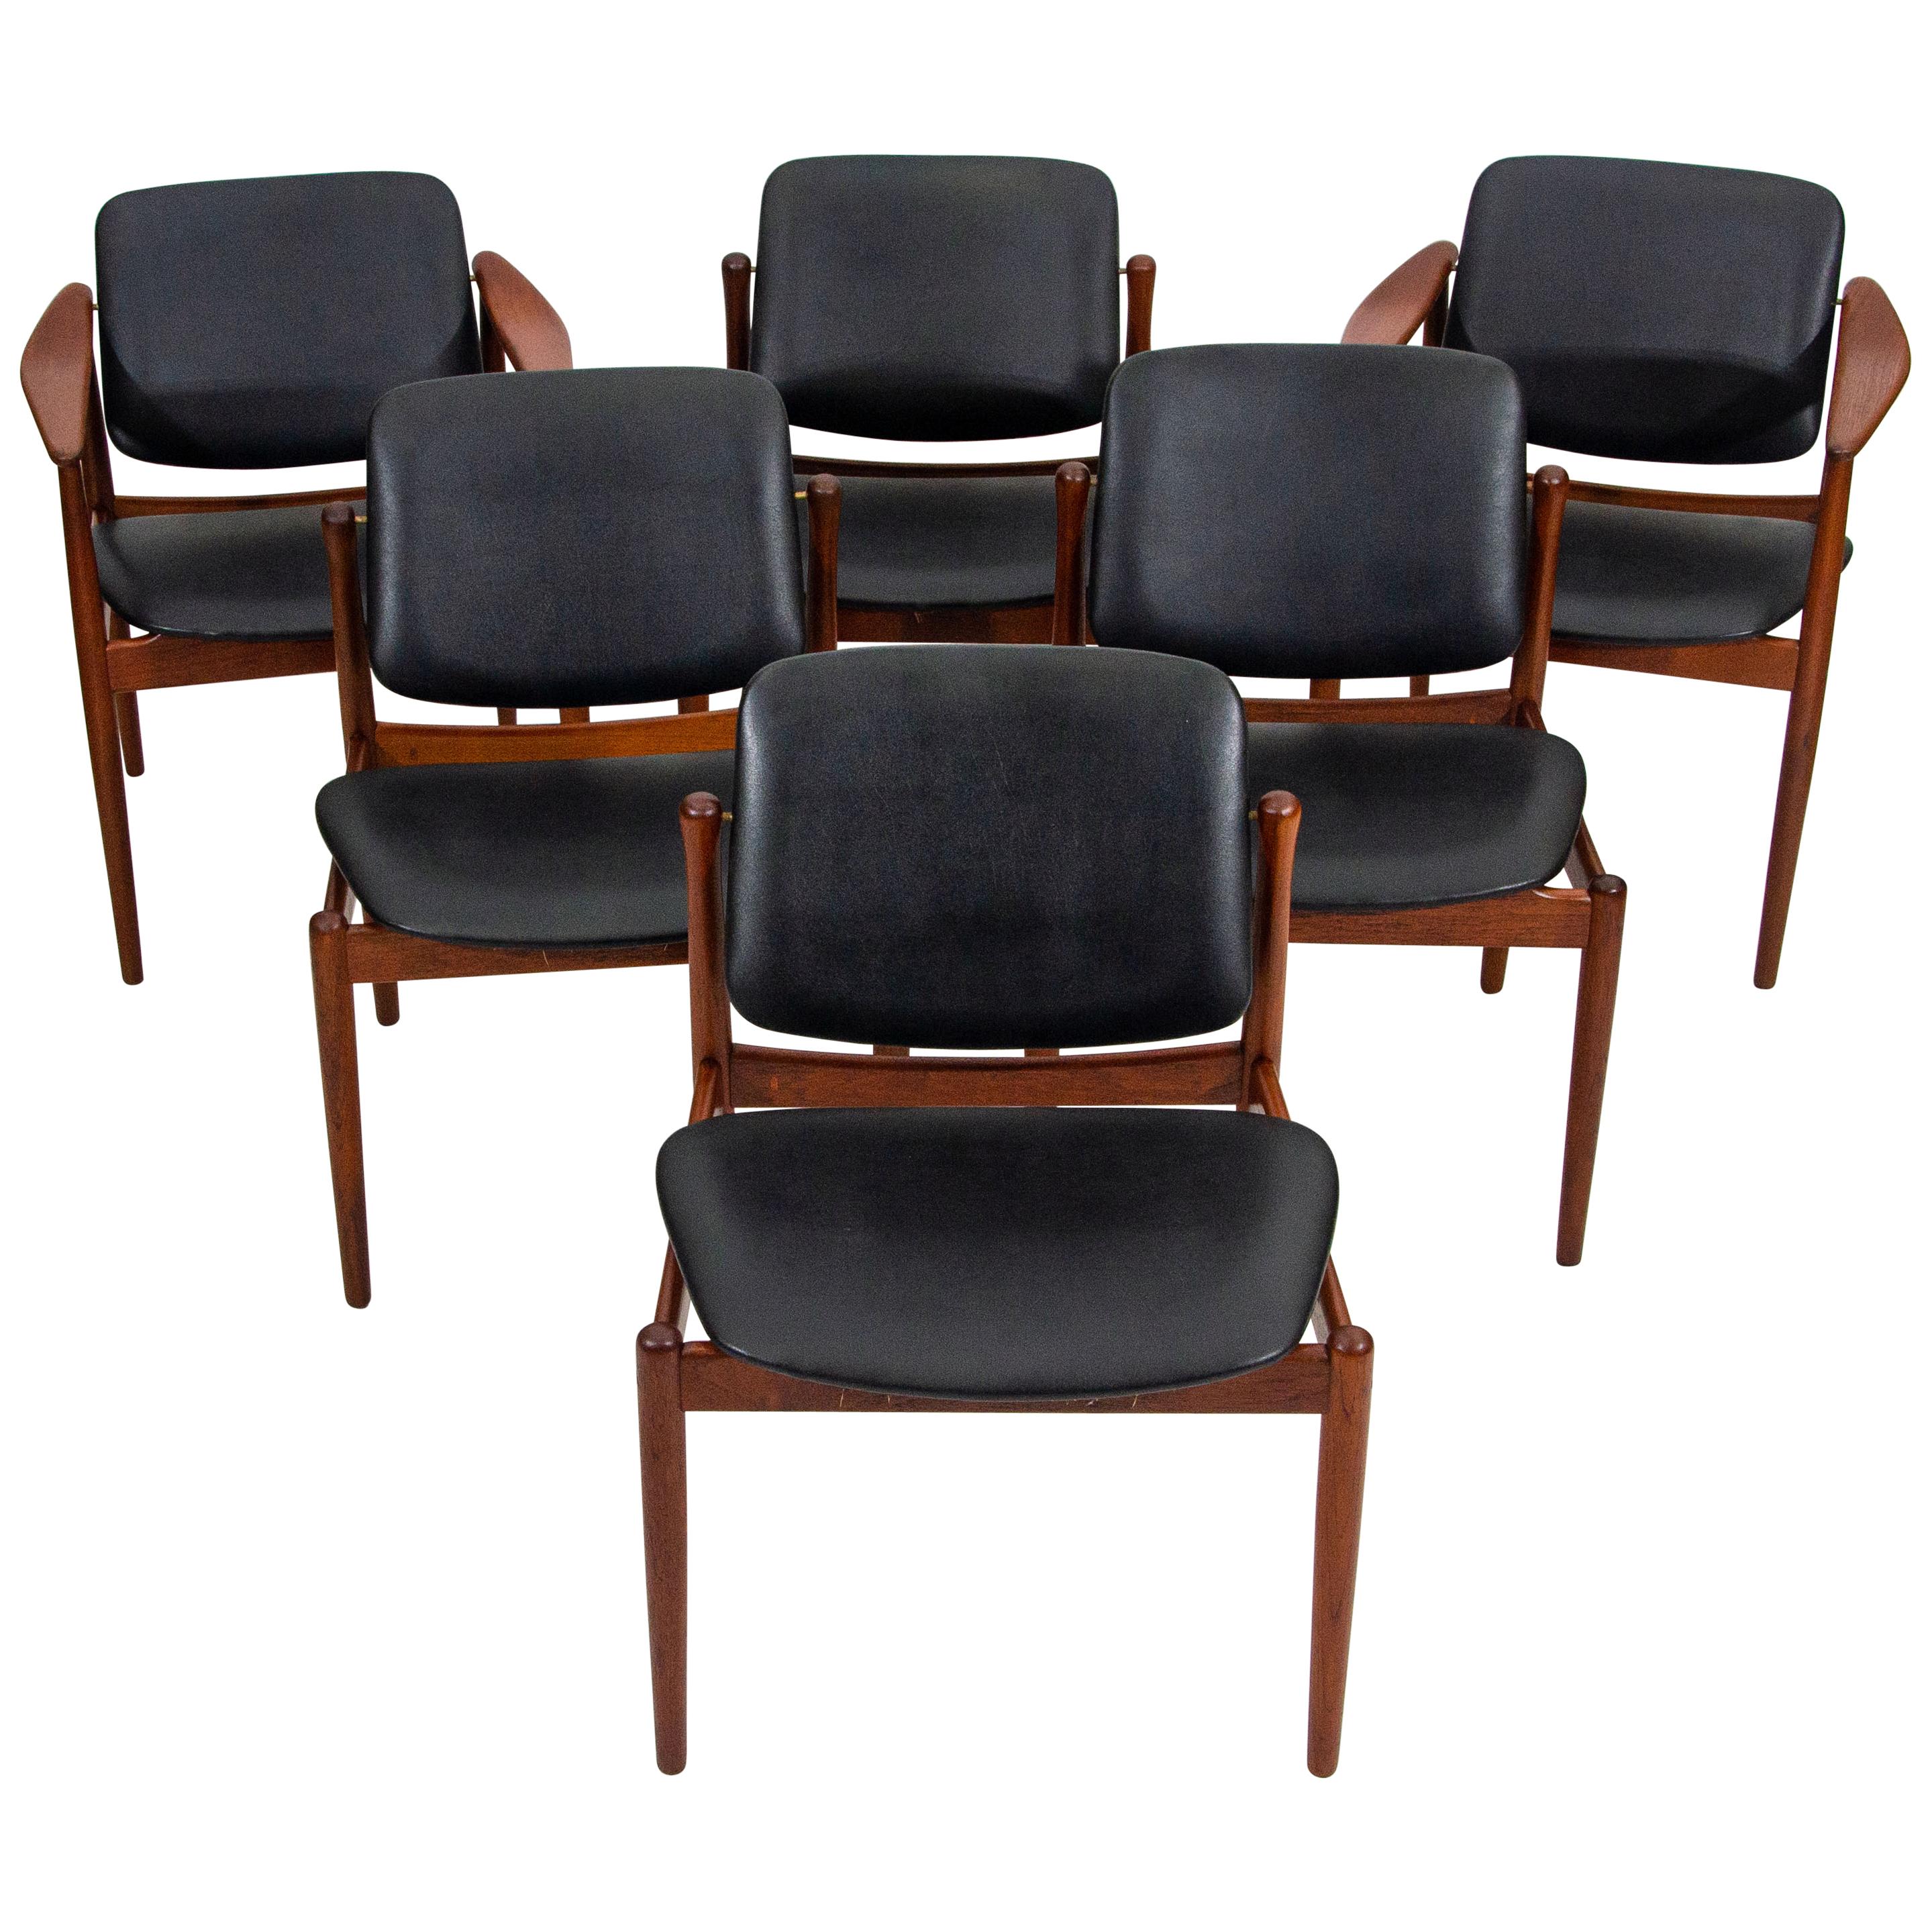 Set of Six Danish Teak Dining Chairs by Arne Vodder for Bovirke, BO92